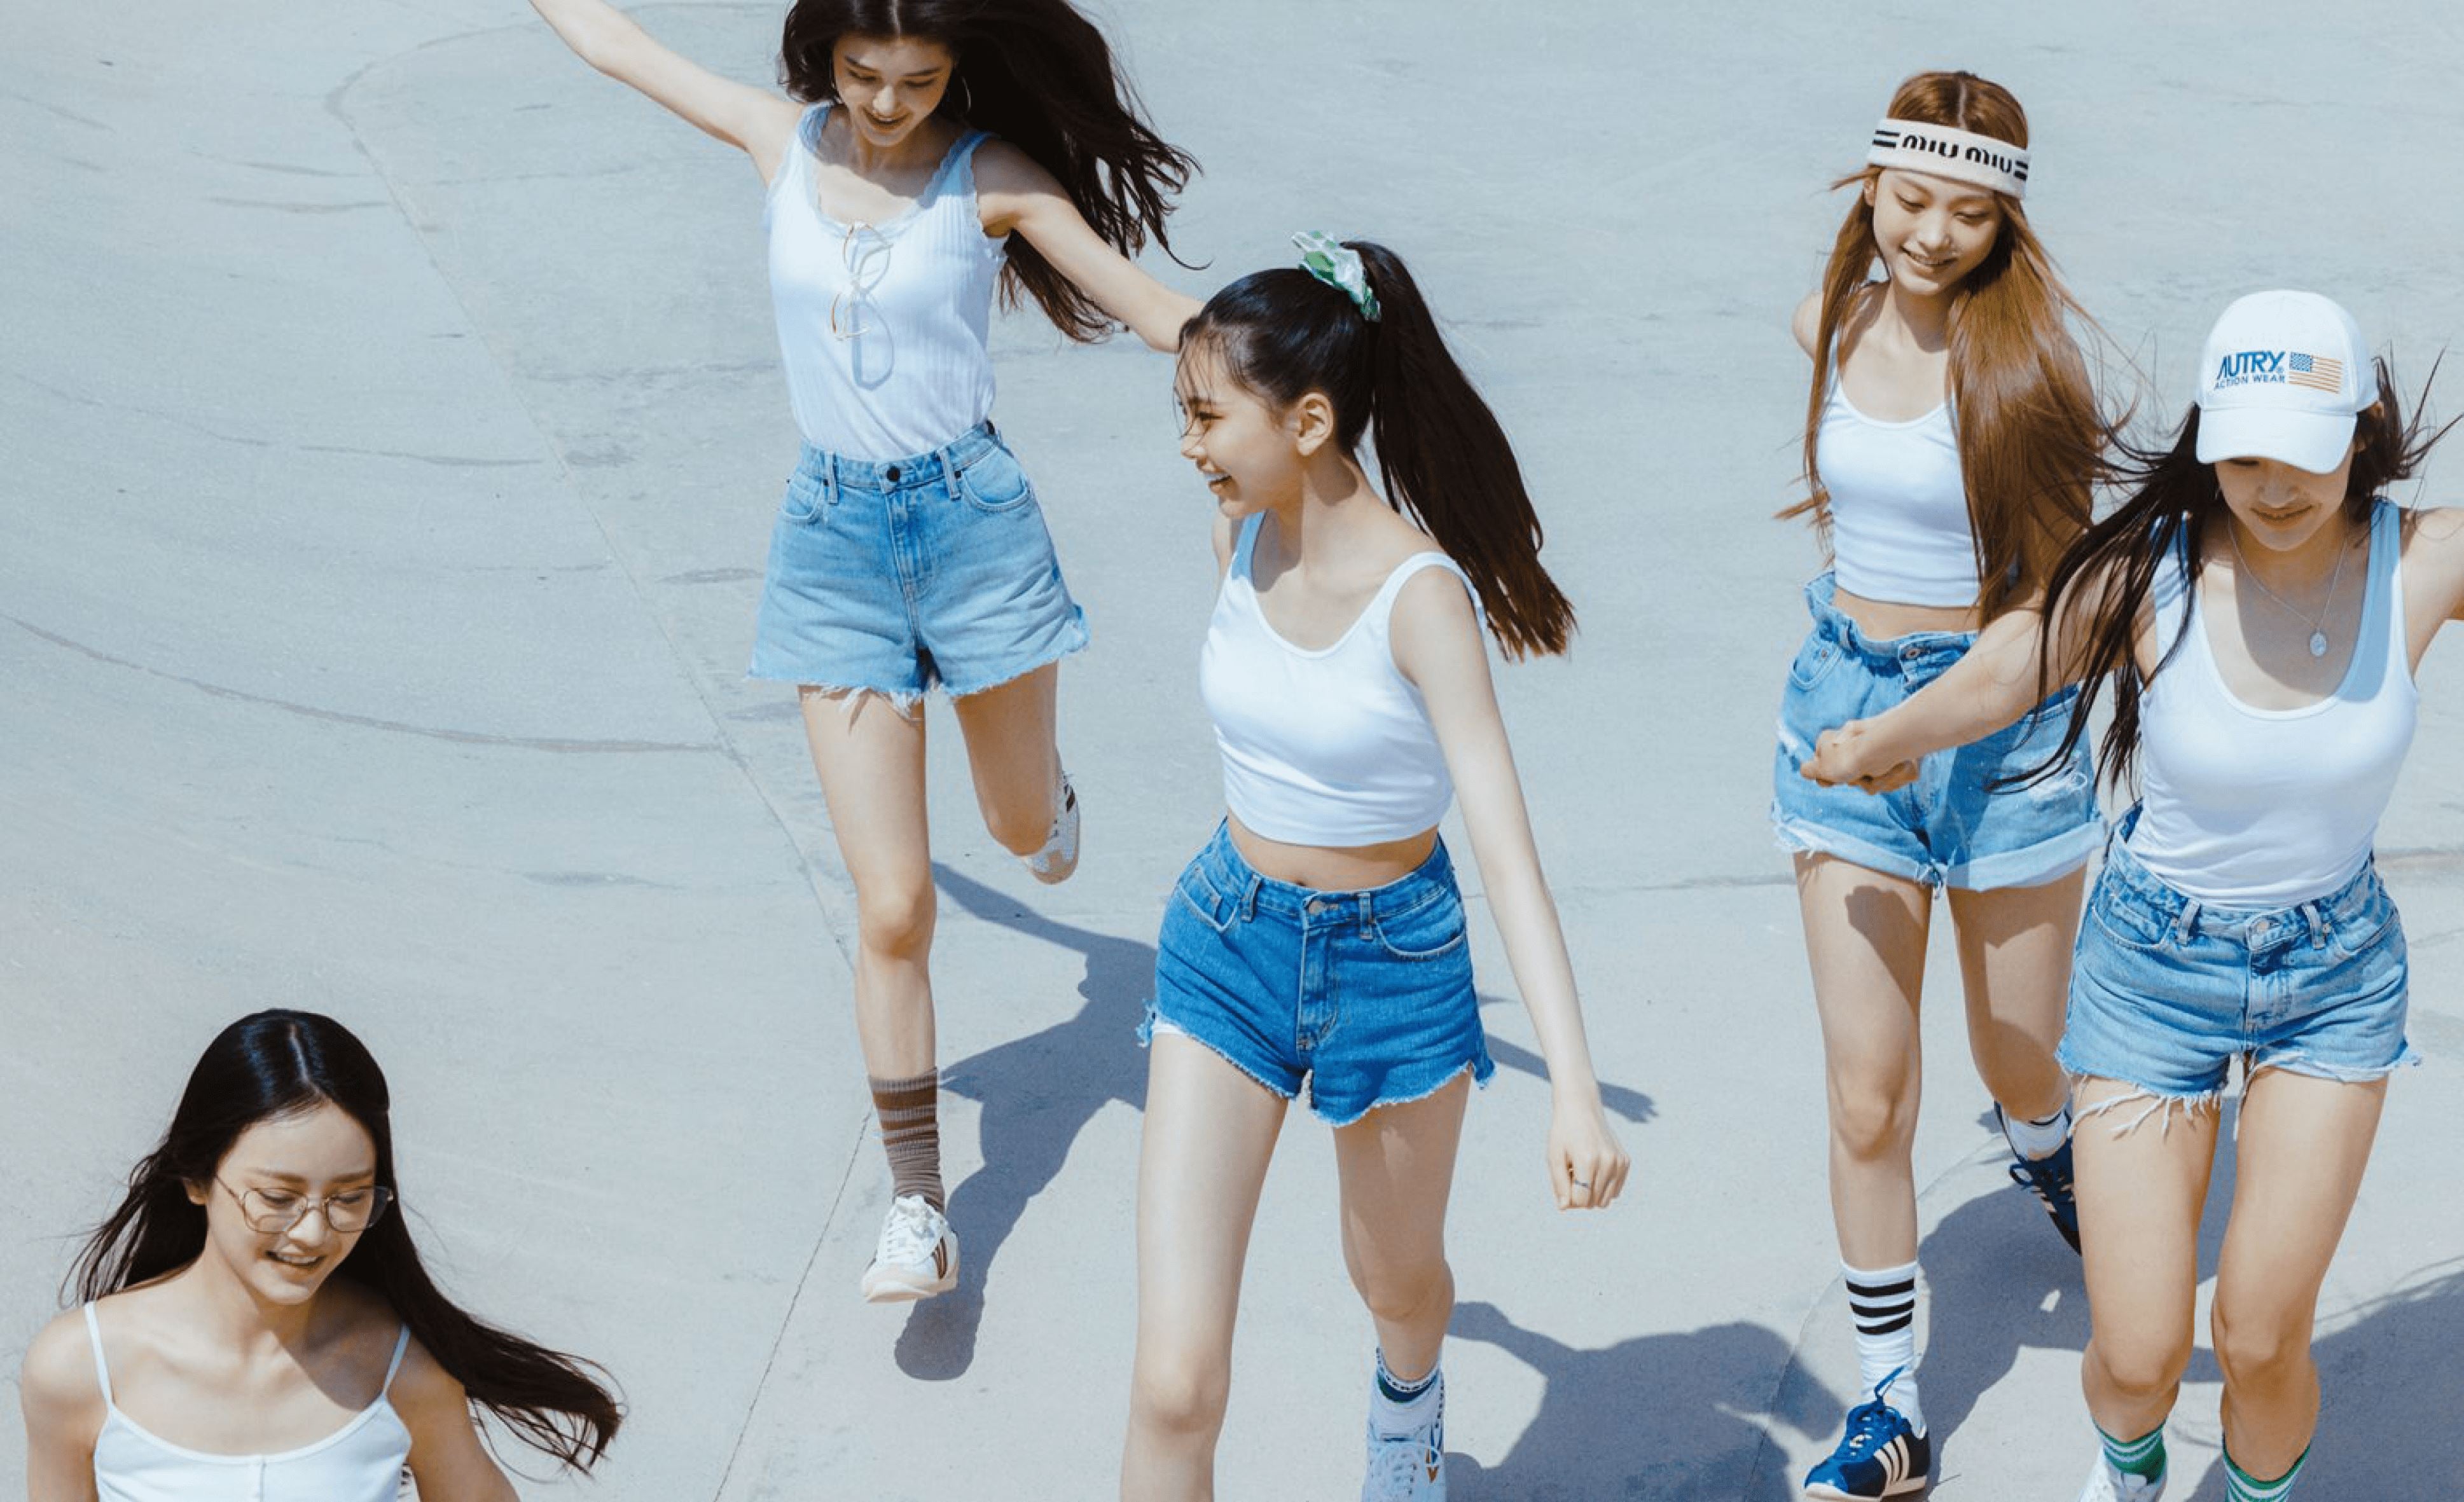 Macht Platz für Hybe's neueste Girlgroup NewJeans!